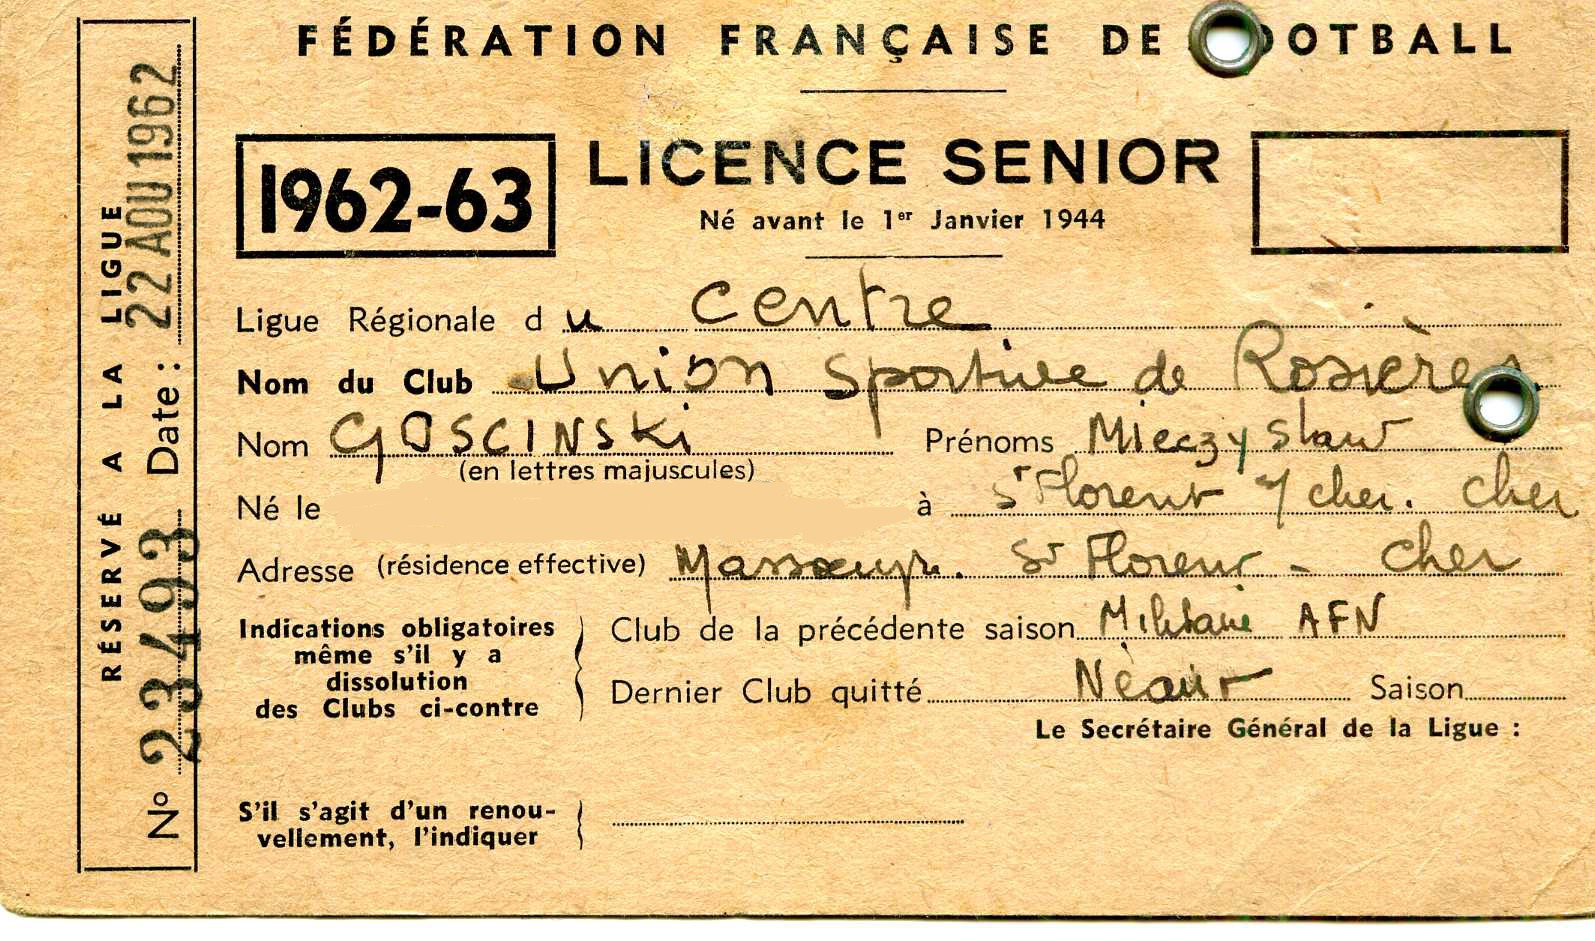 Licence de Mieczyslaw GOSCINSKI 1962-63